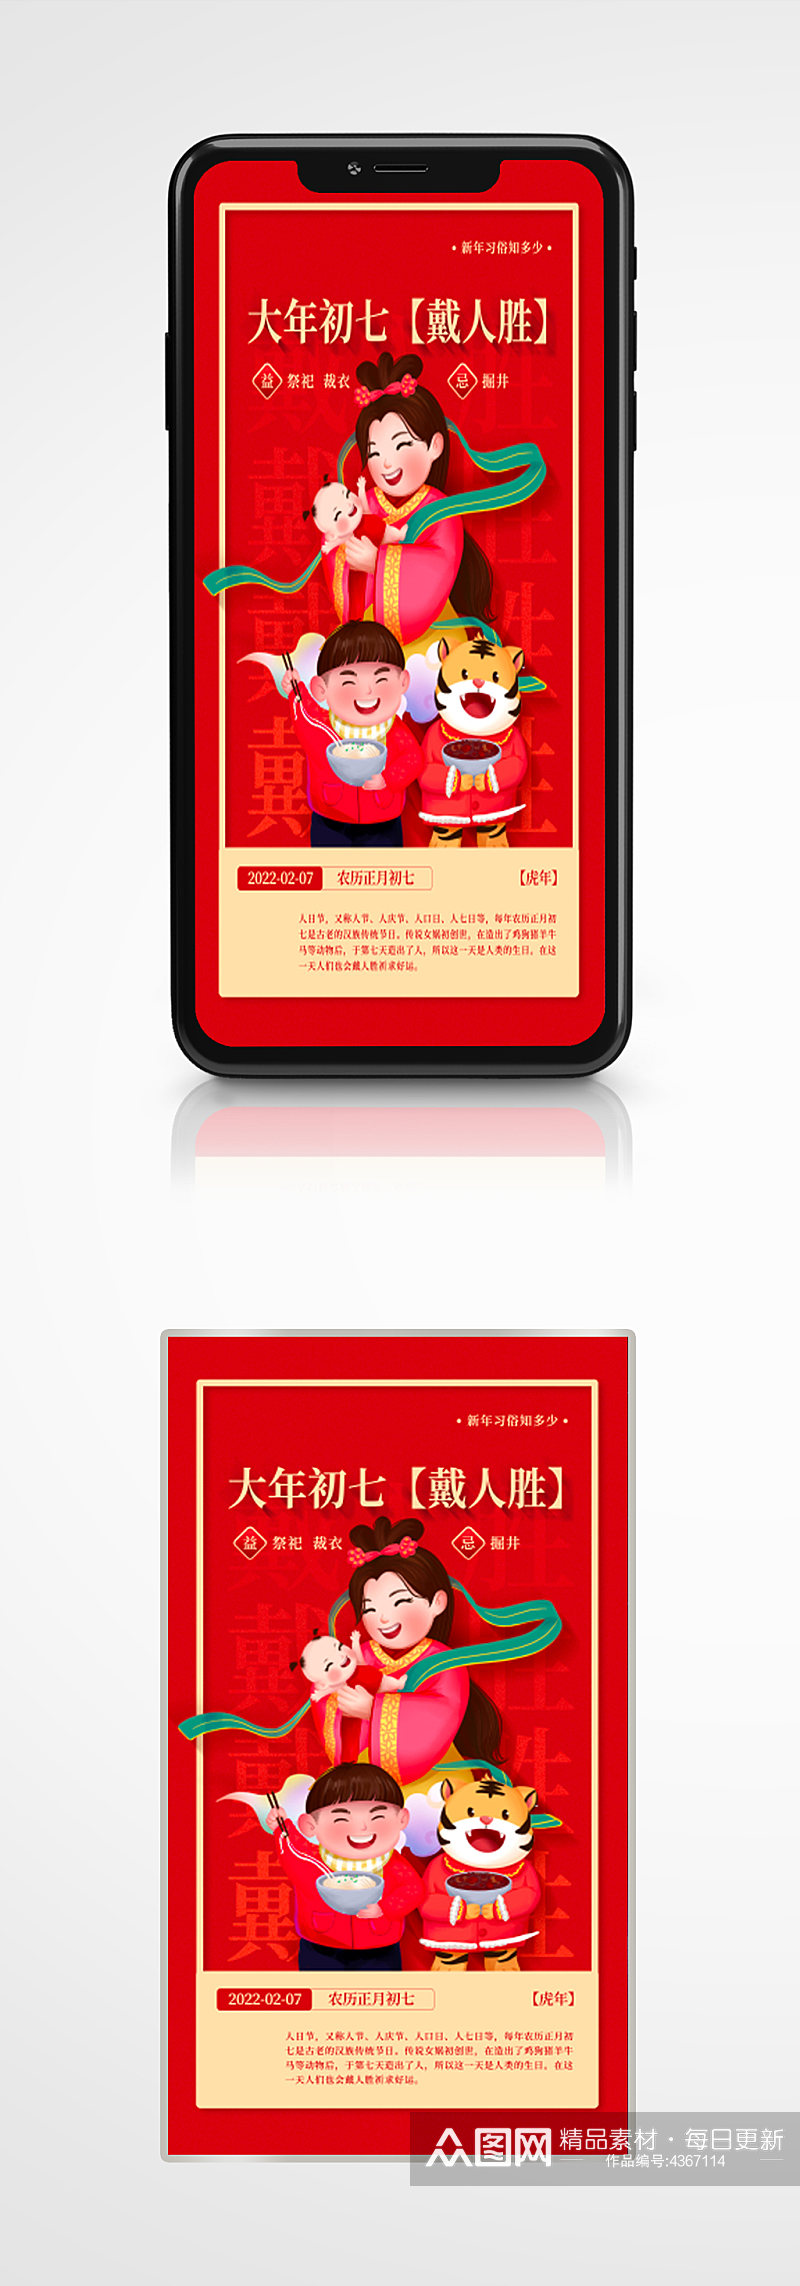 大年初七戴人胜新年年俗红色手机海报插画素材